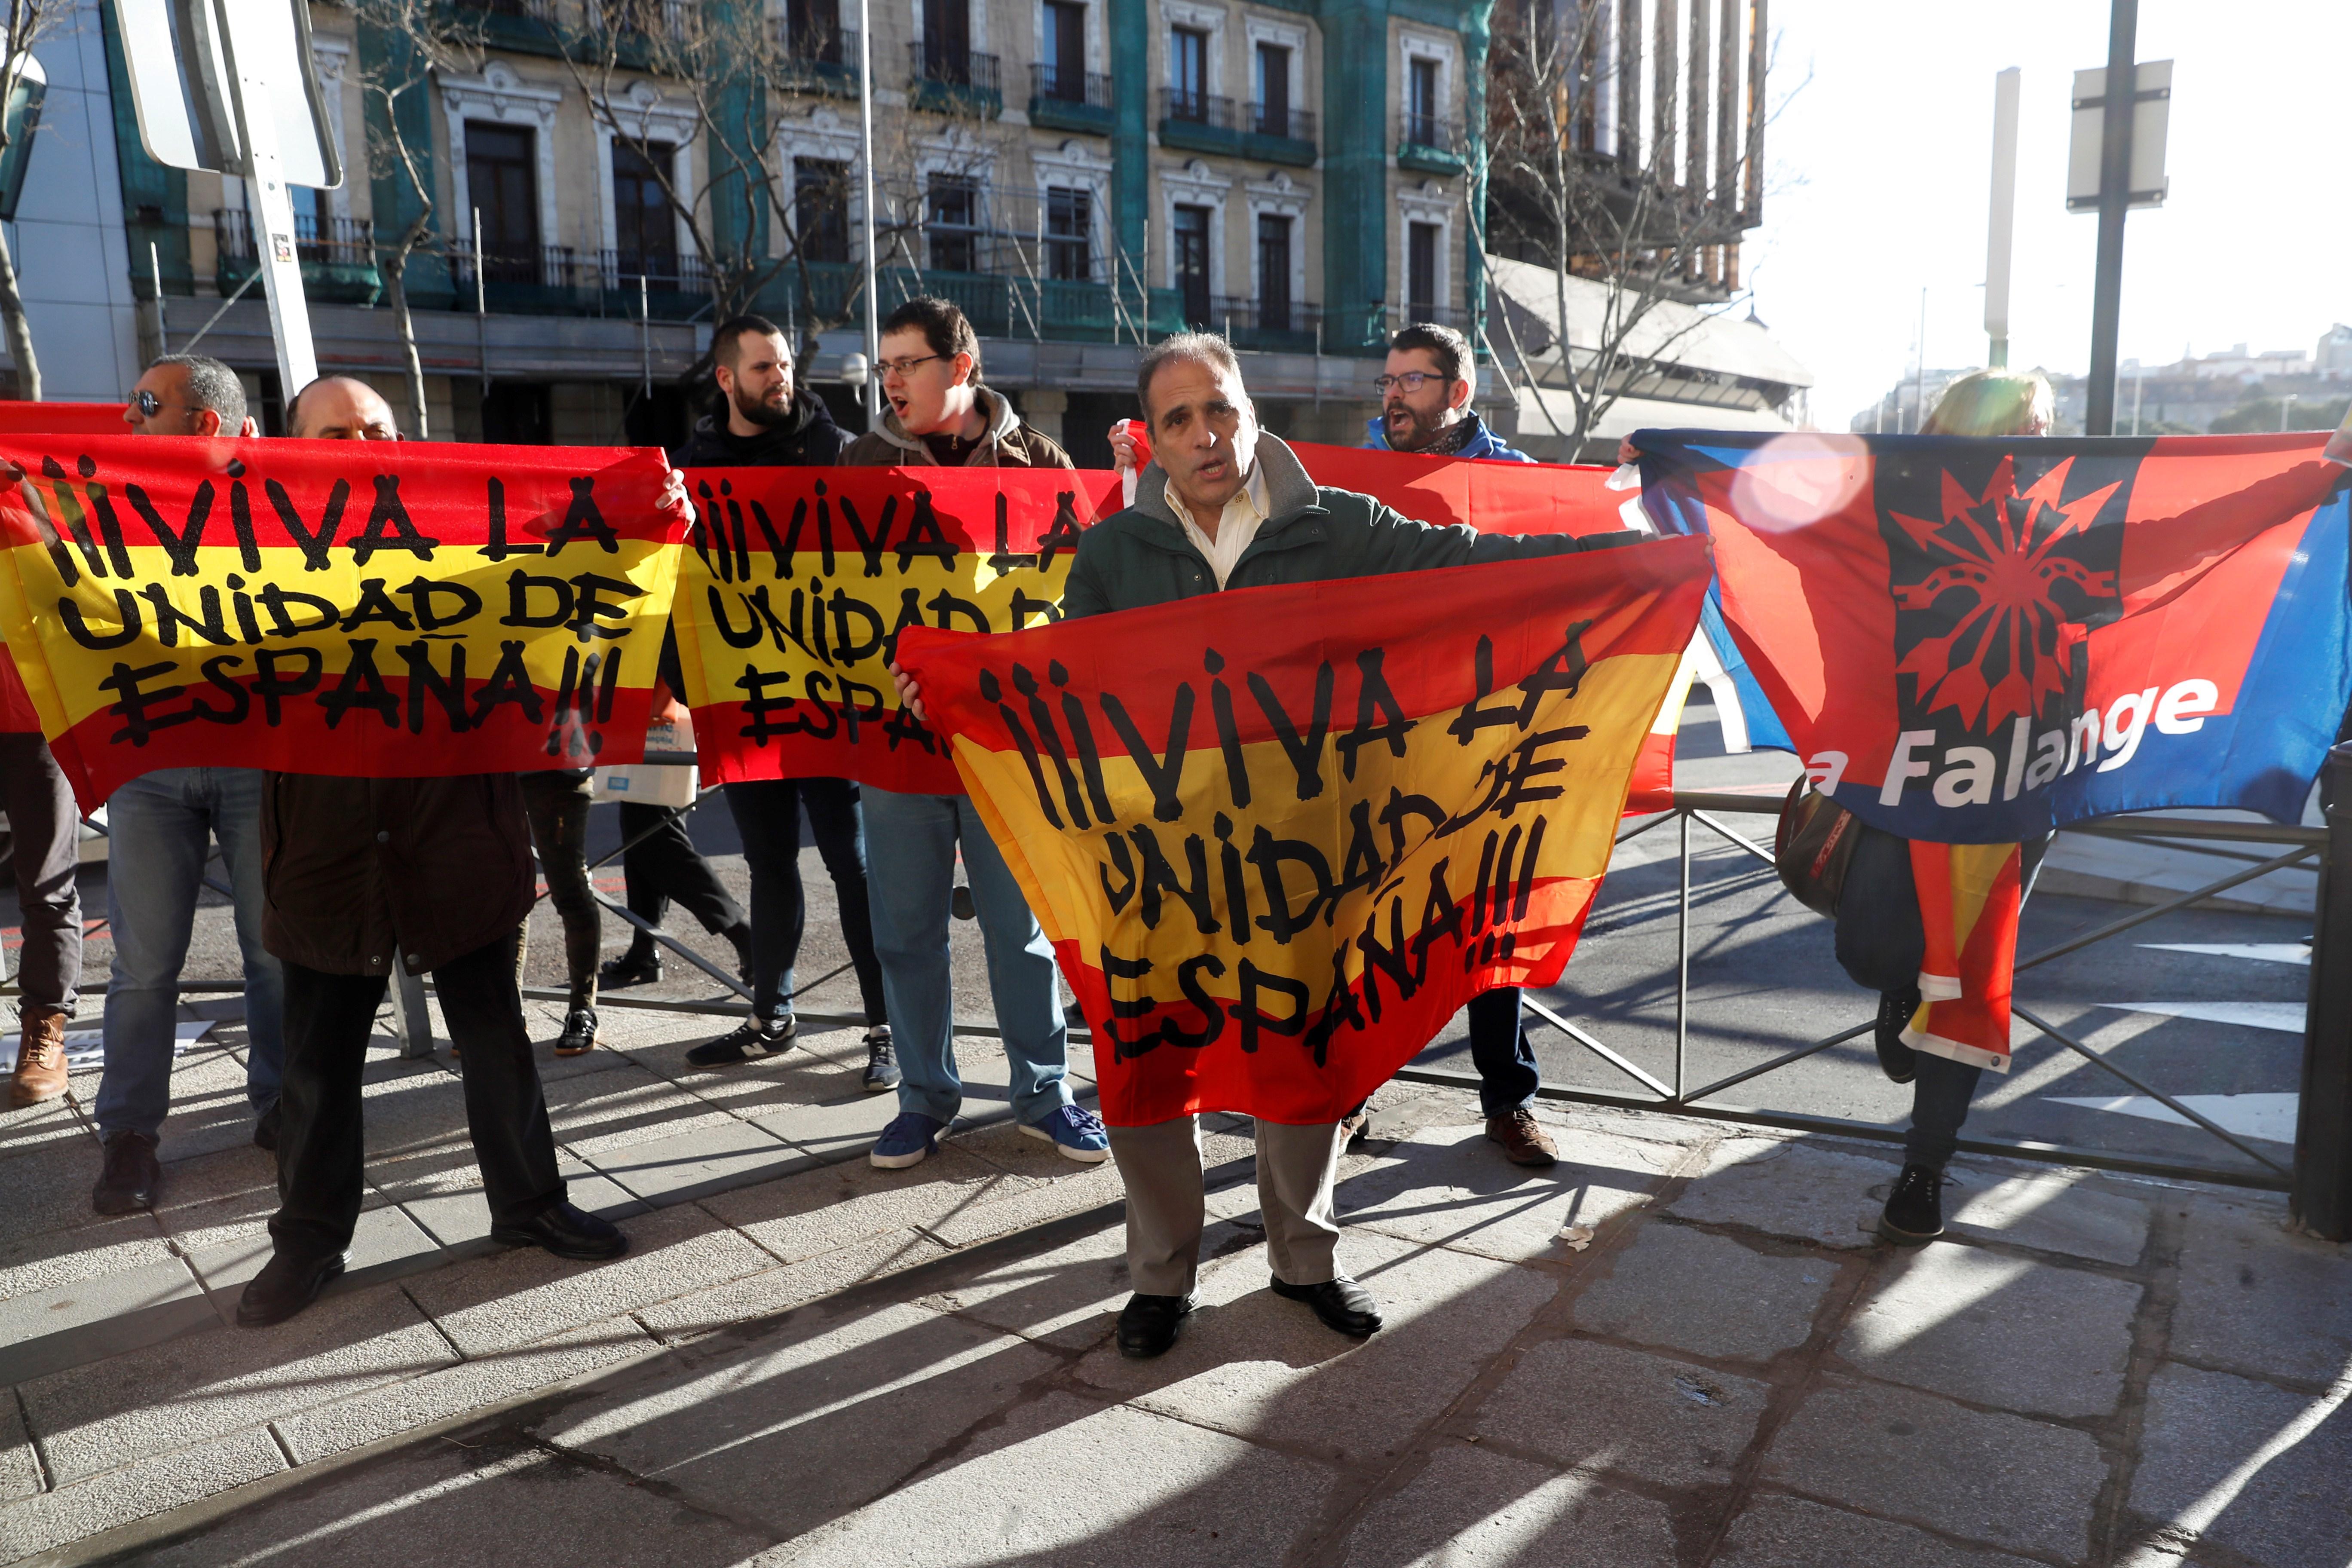 'Ardor guerrero' a Madrid i crisi a tots els poders de l’Estat